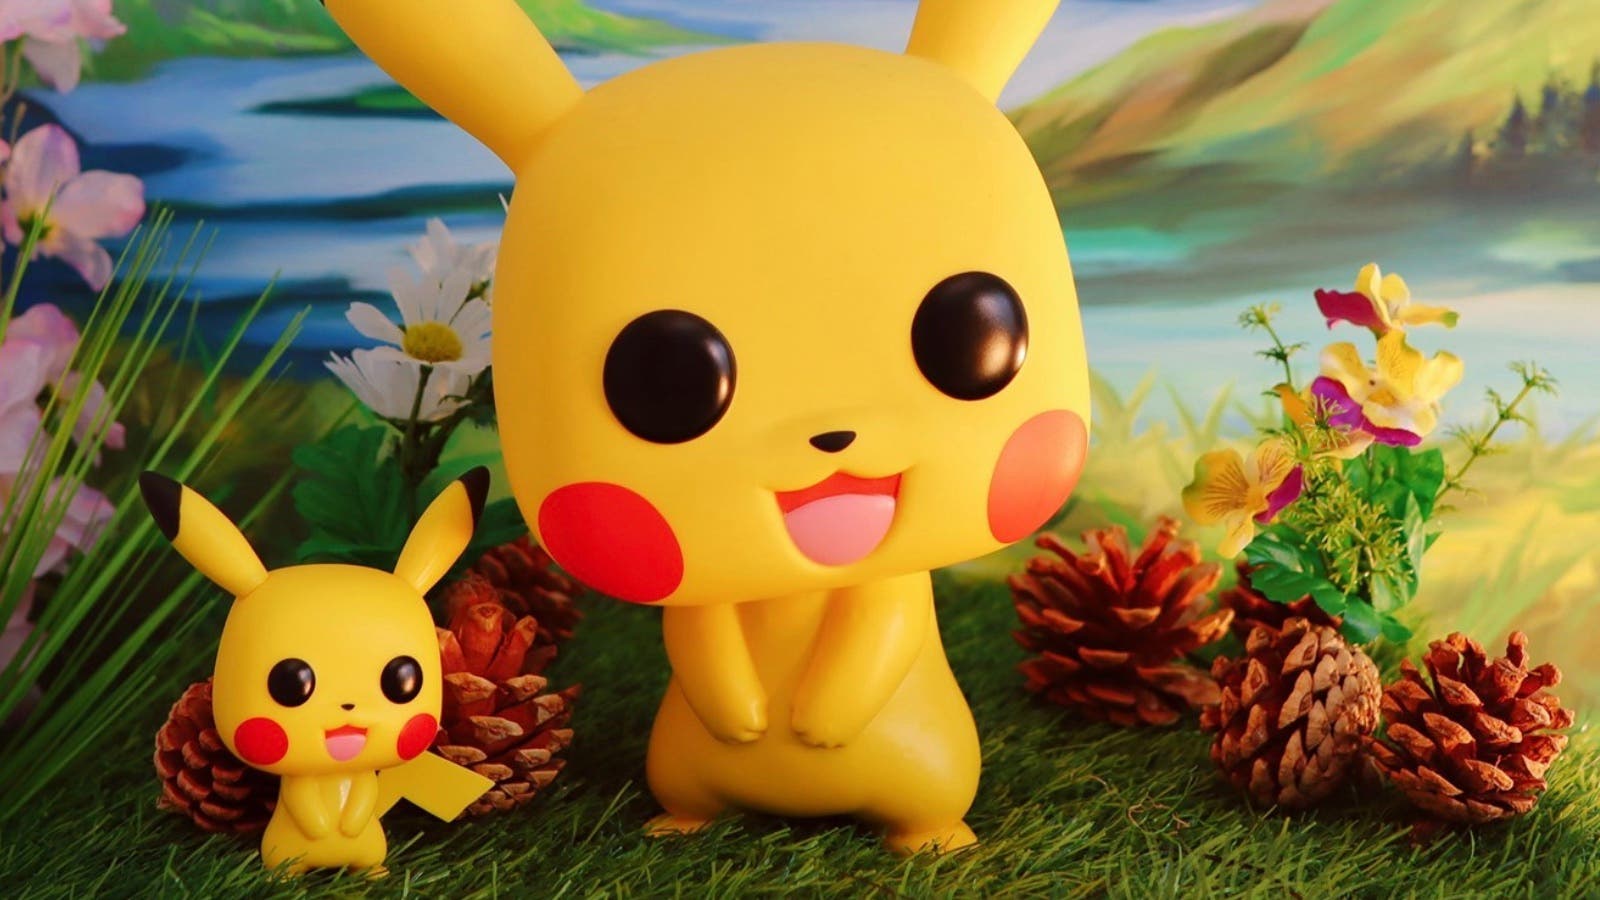 Ya puedes comprar en Amazon España el Funko Pikachu Gigante de 18″: exclusivo y caro, pero genial